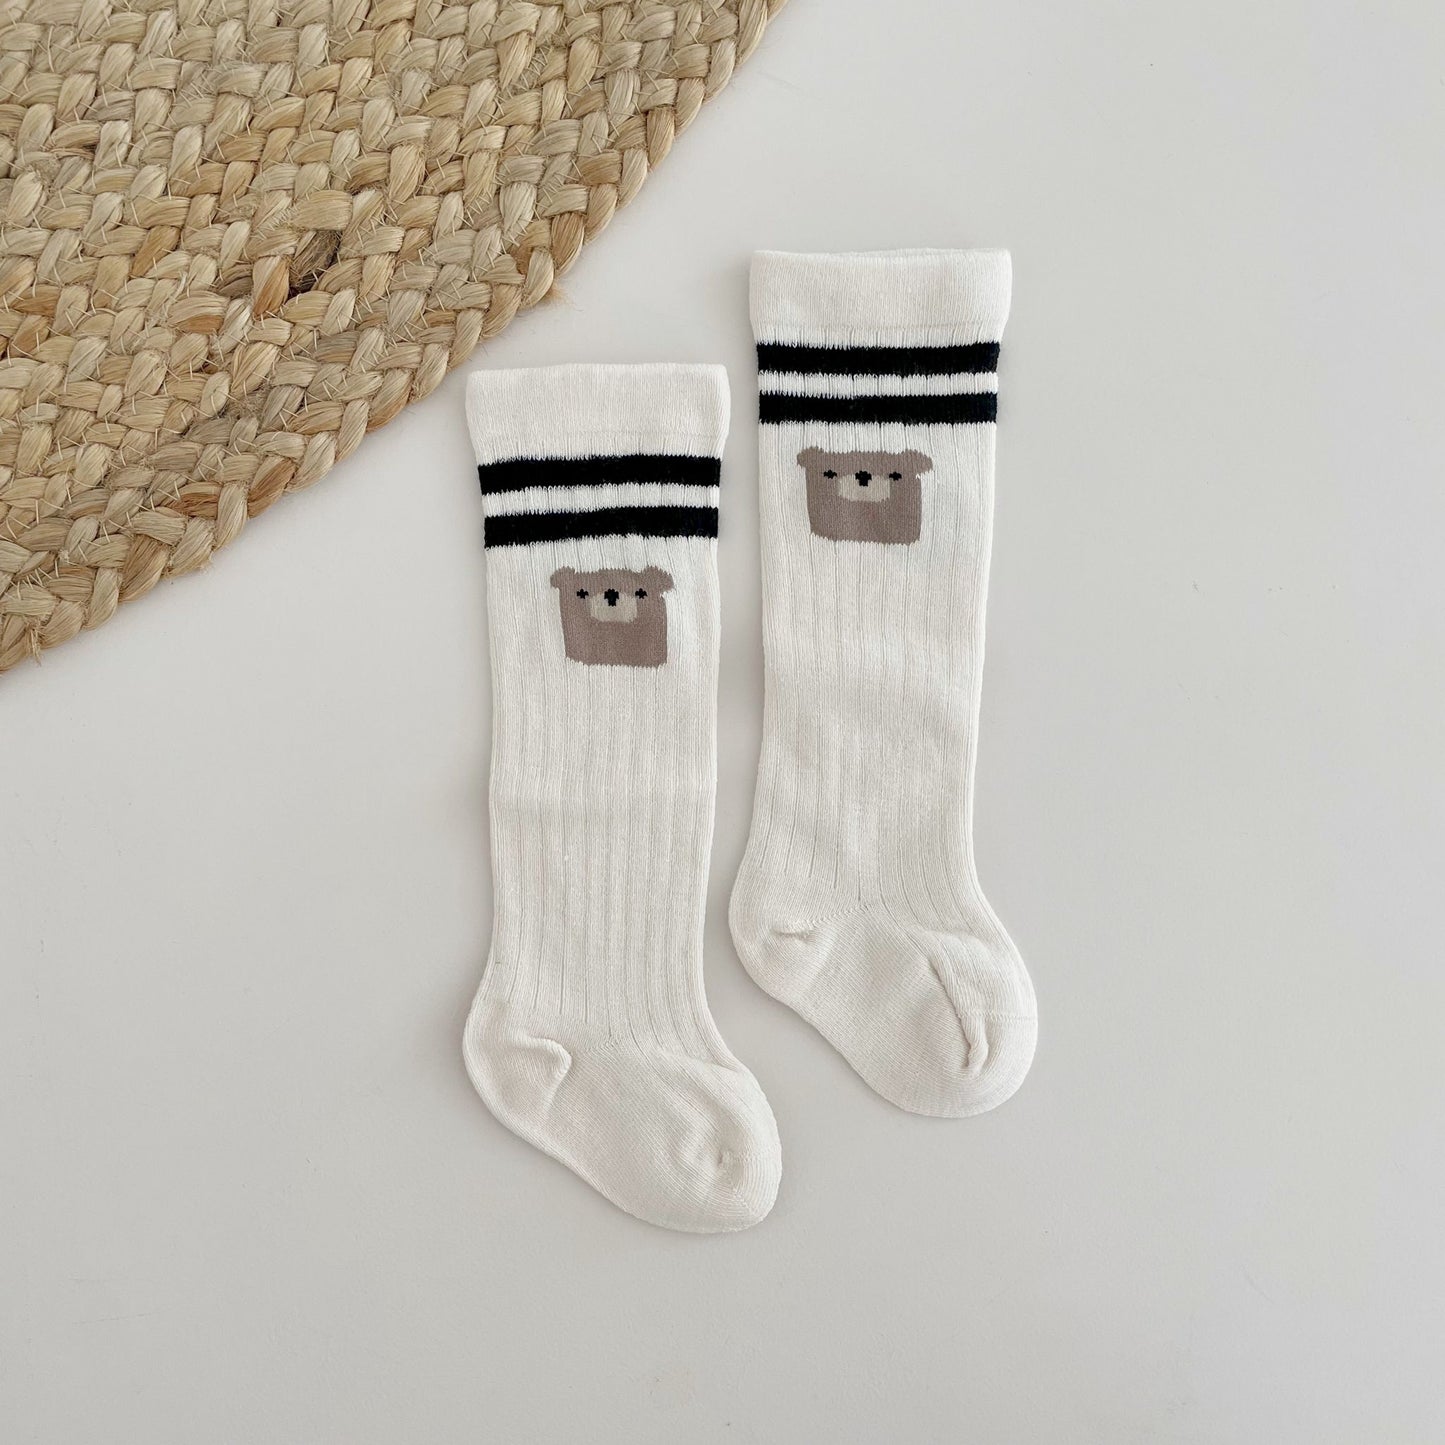 Bärchen-Socken | 0-3 Jahre